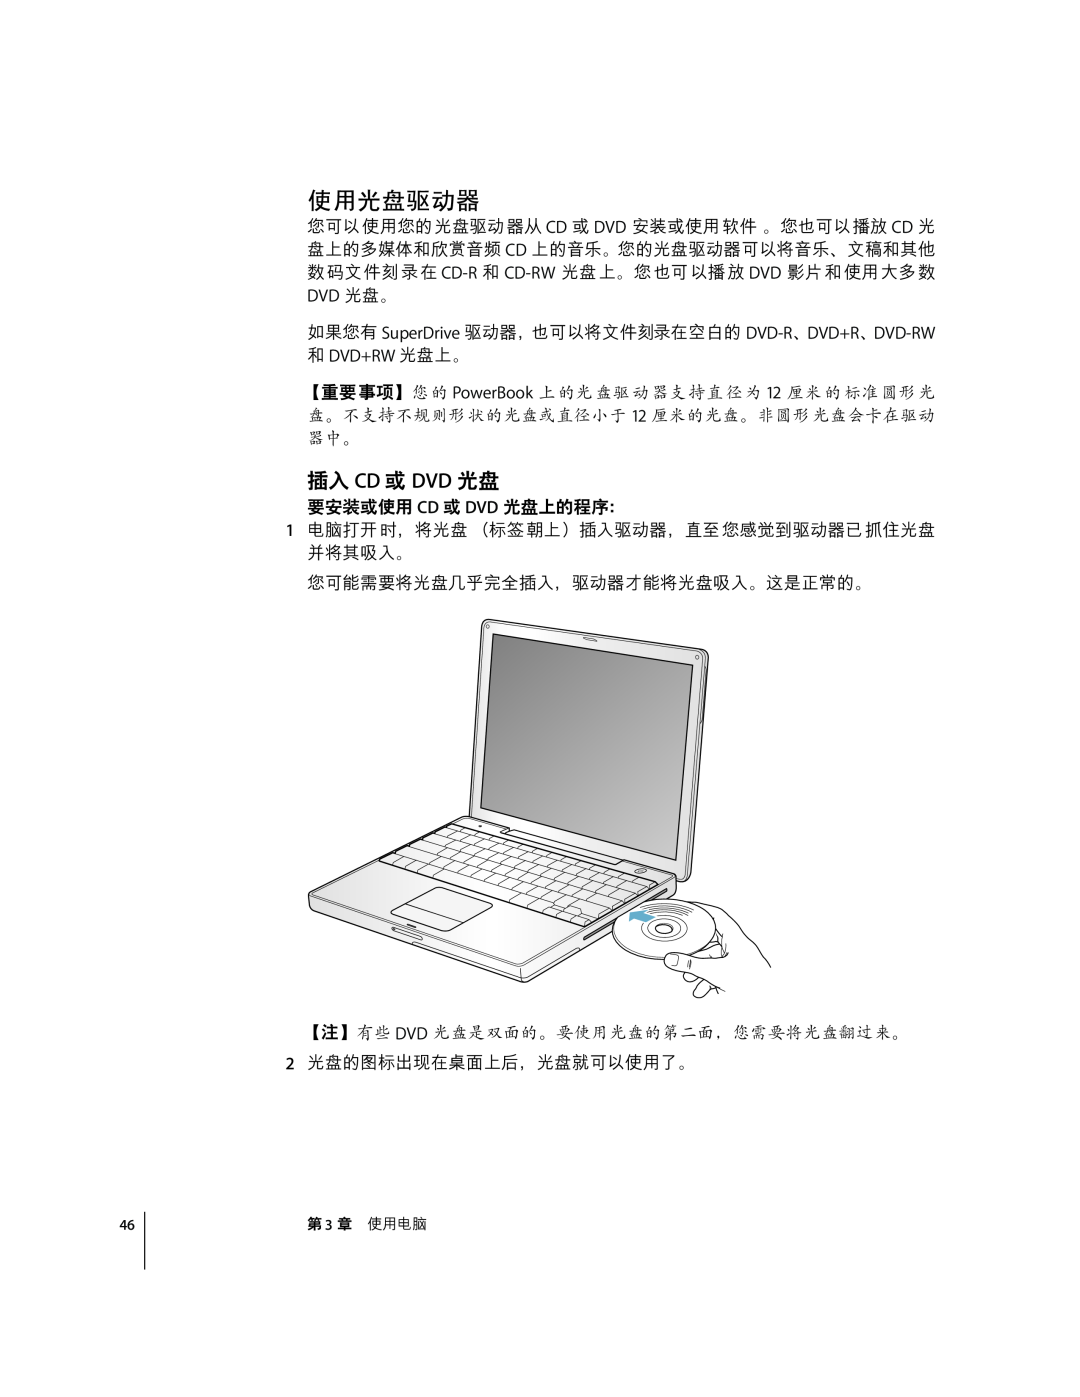 Apple G4 12 manual Kl¯S±J, “ Cd ¤ Dvd Fg, 4#¤ CD ¤ DVD FG”-óô, 3 uÉ÷ 